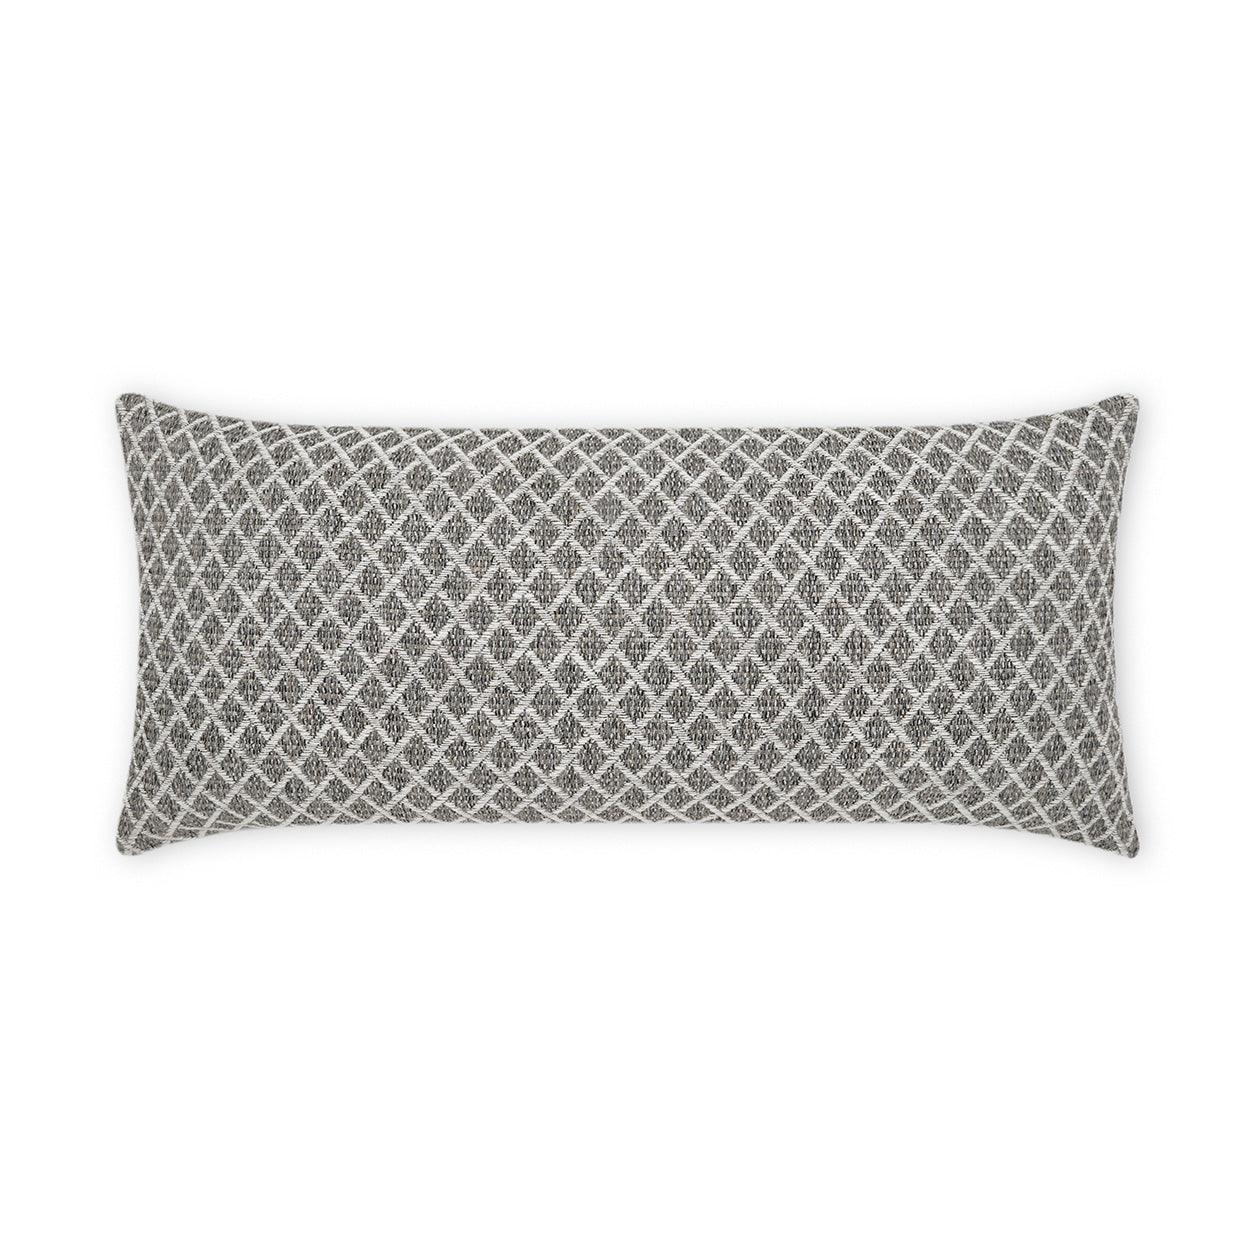 LOOMLAN Outdoor - Outdoor Ambree Lumbar Pillow - Ebony - Outdoor Pillows